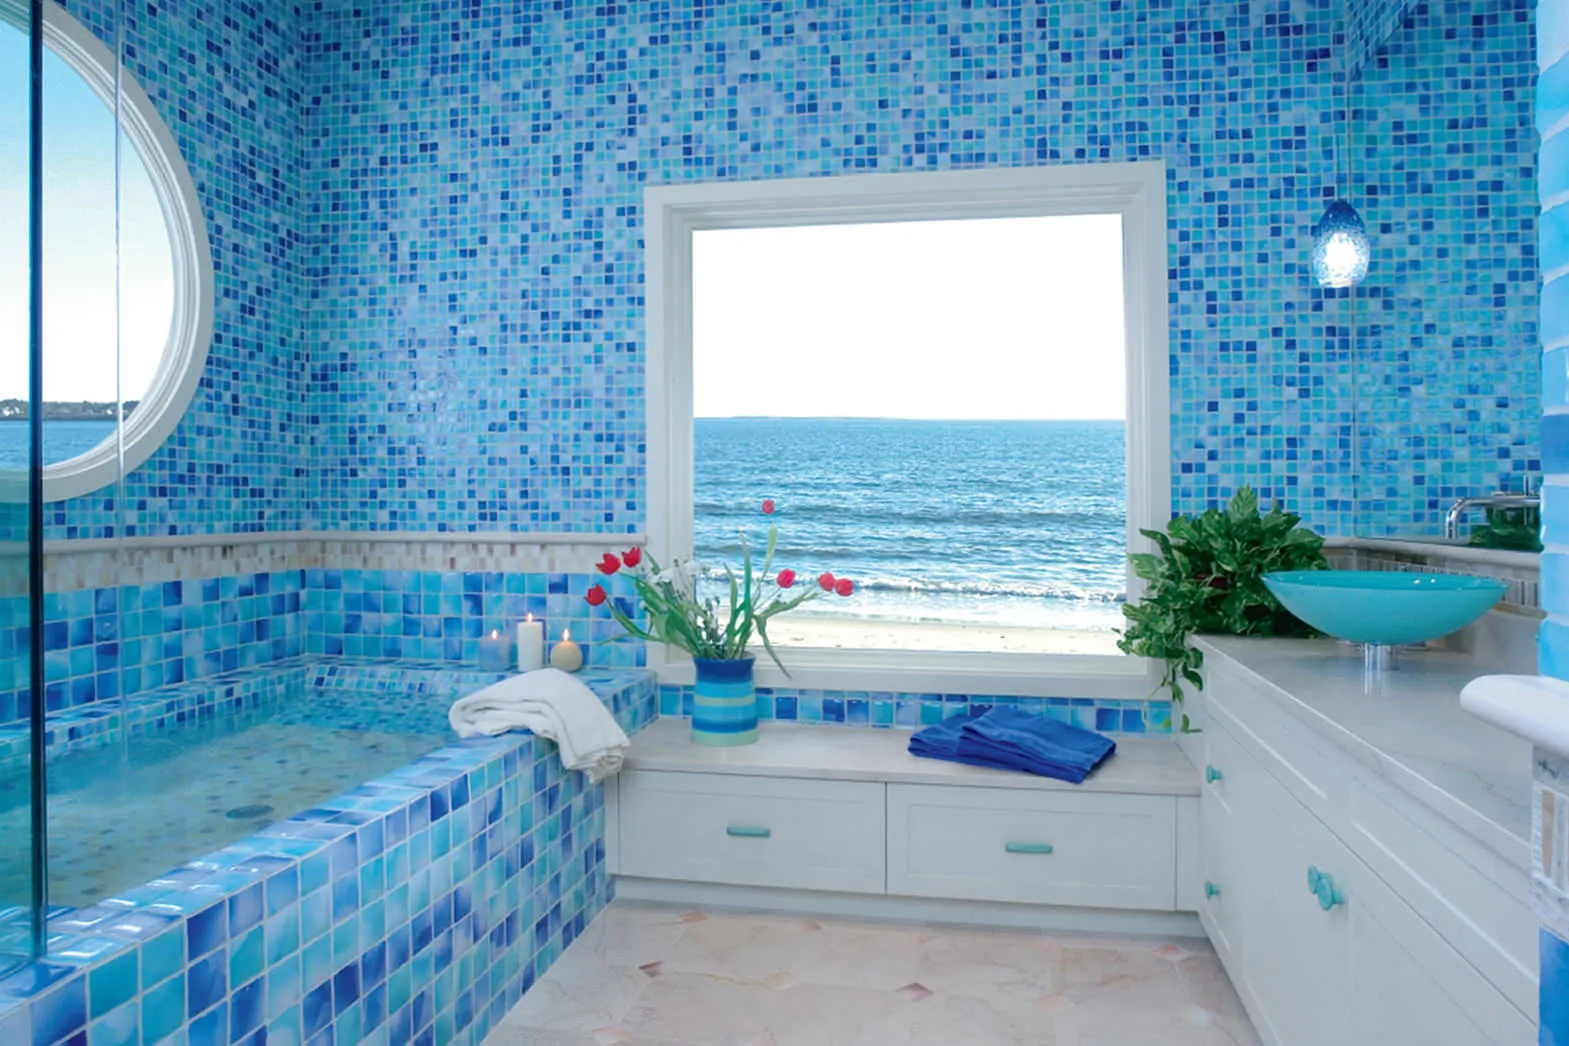 Мозаика в синих тонах в просторной ванной